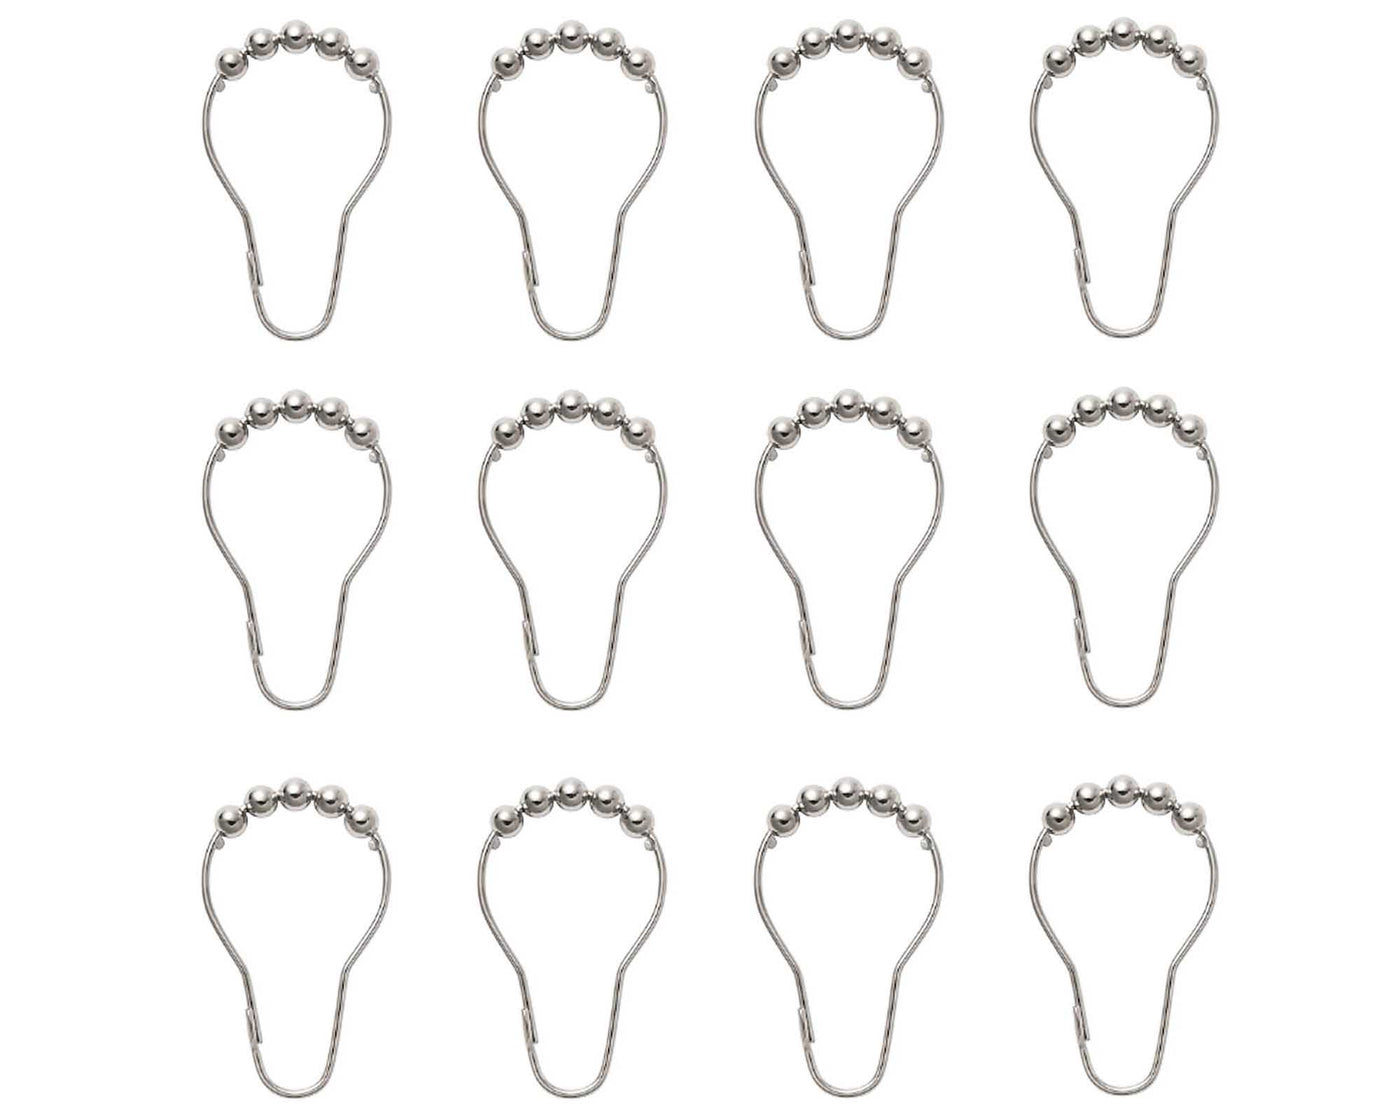 12 Sets of ball; bearing slider shower curtain hooks